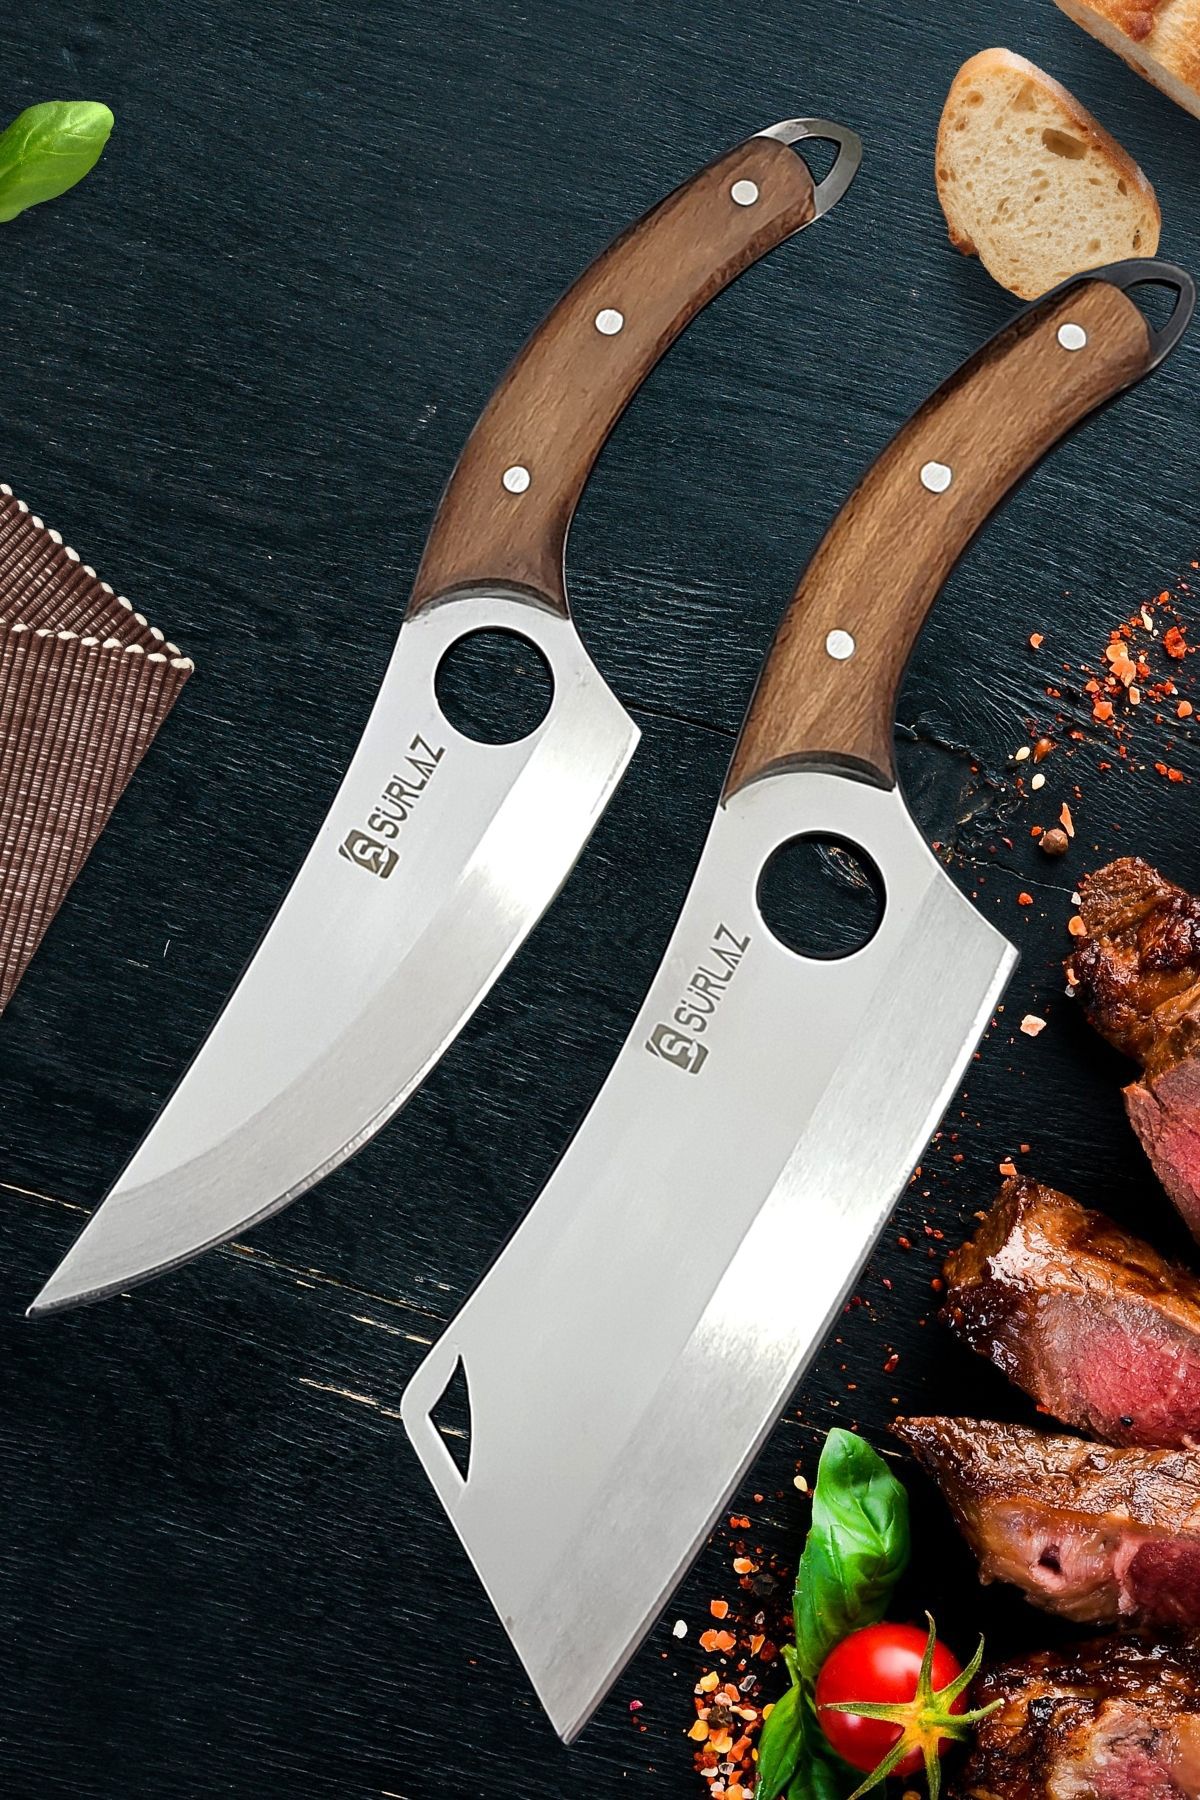 SürLaz Kamp Bıçağı Çakı 2 Parça Outdoor Bıçak Seti Kampçılara Özel